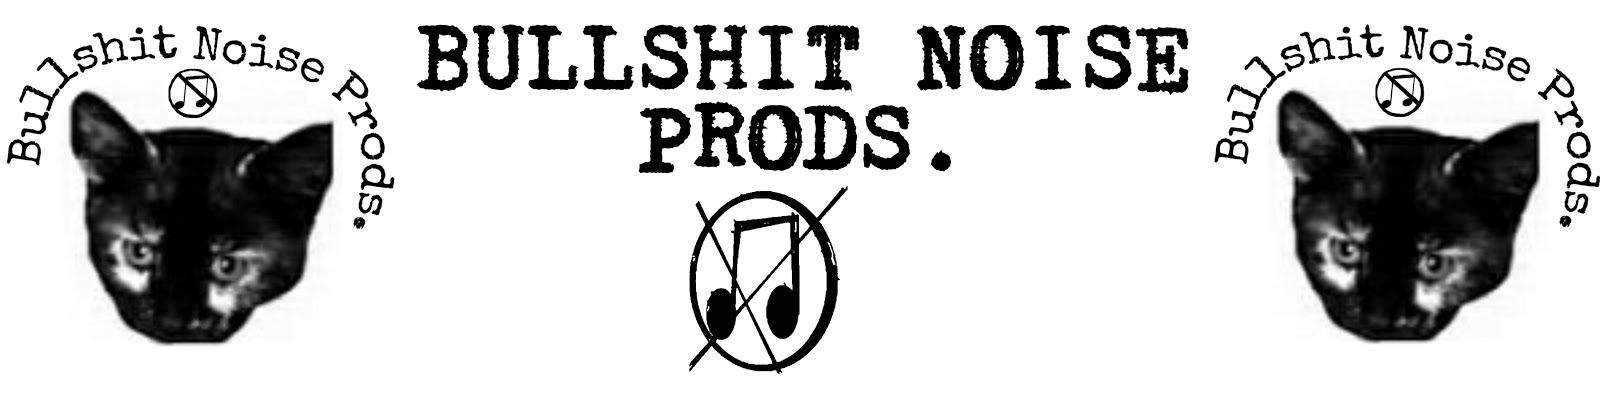 Bullshit Noise Prods.